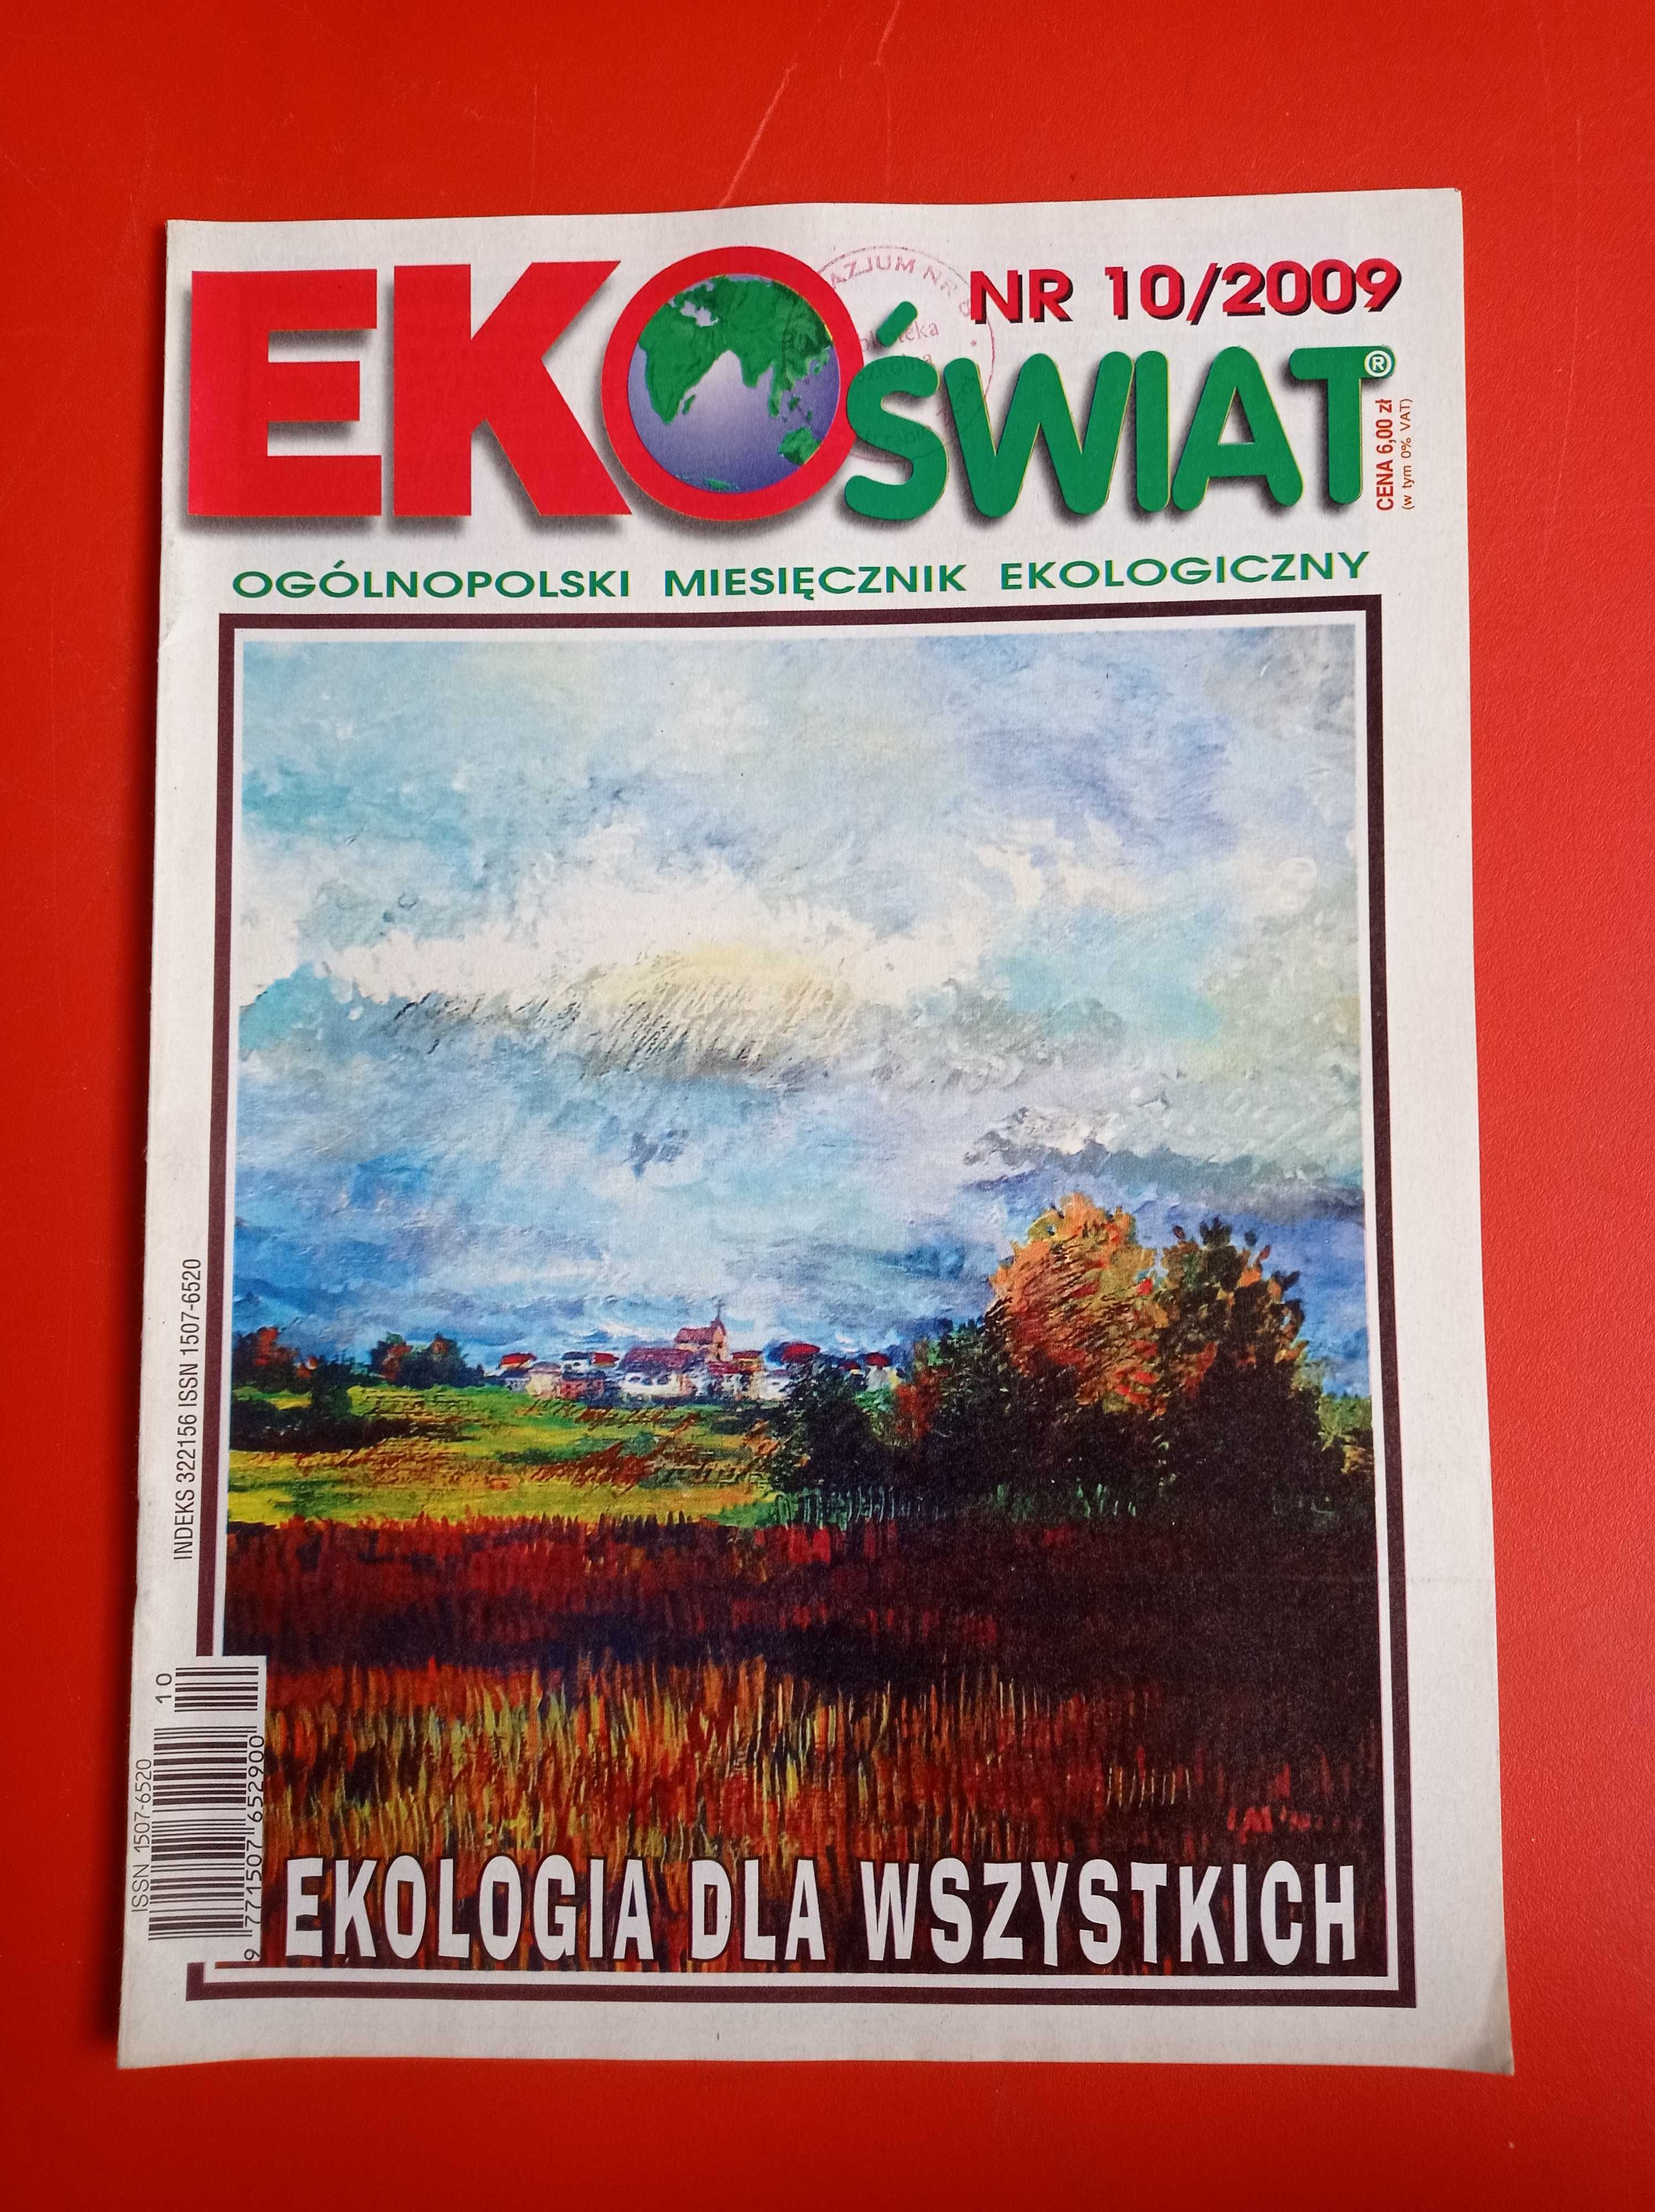 EkoŚwiat, miesięcznik ekologiczny, nr 10/2009, październik 2009